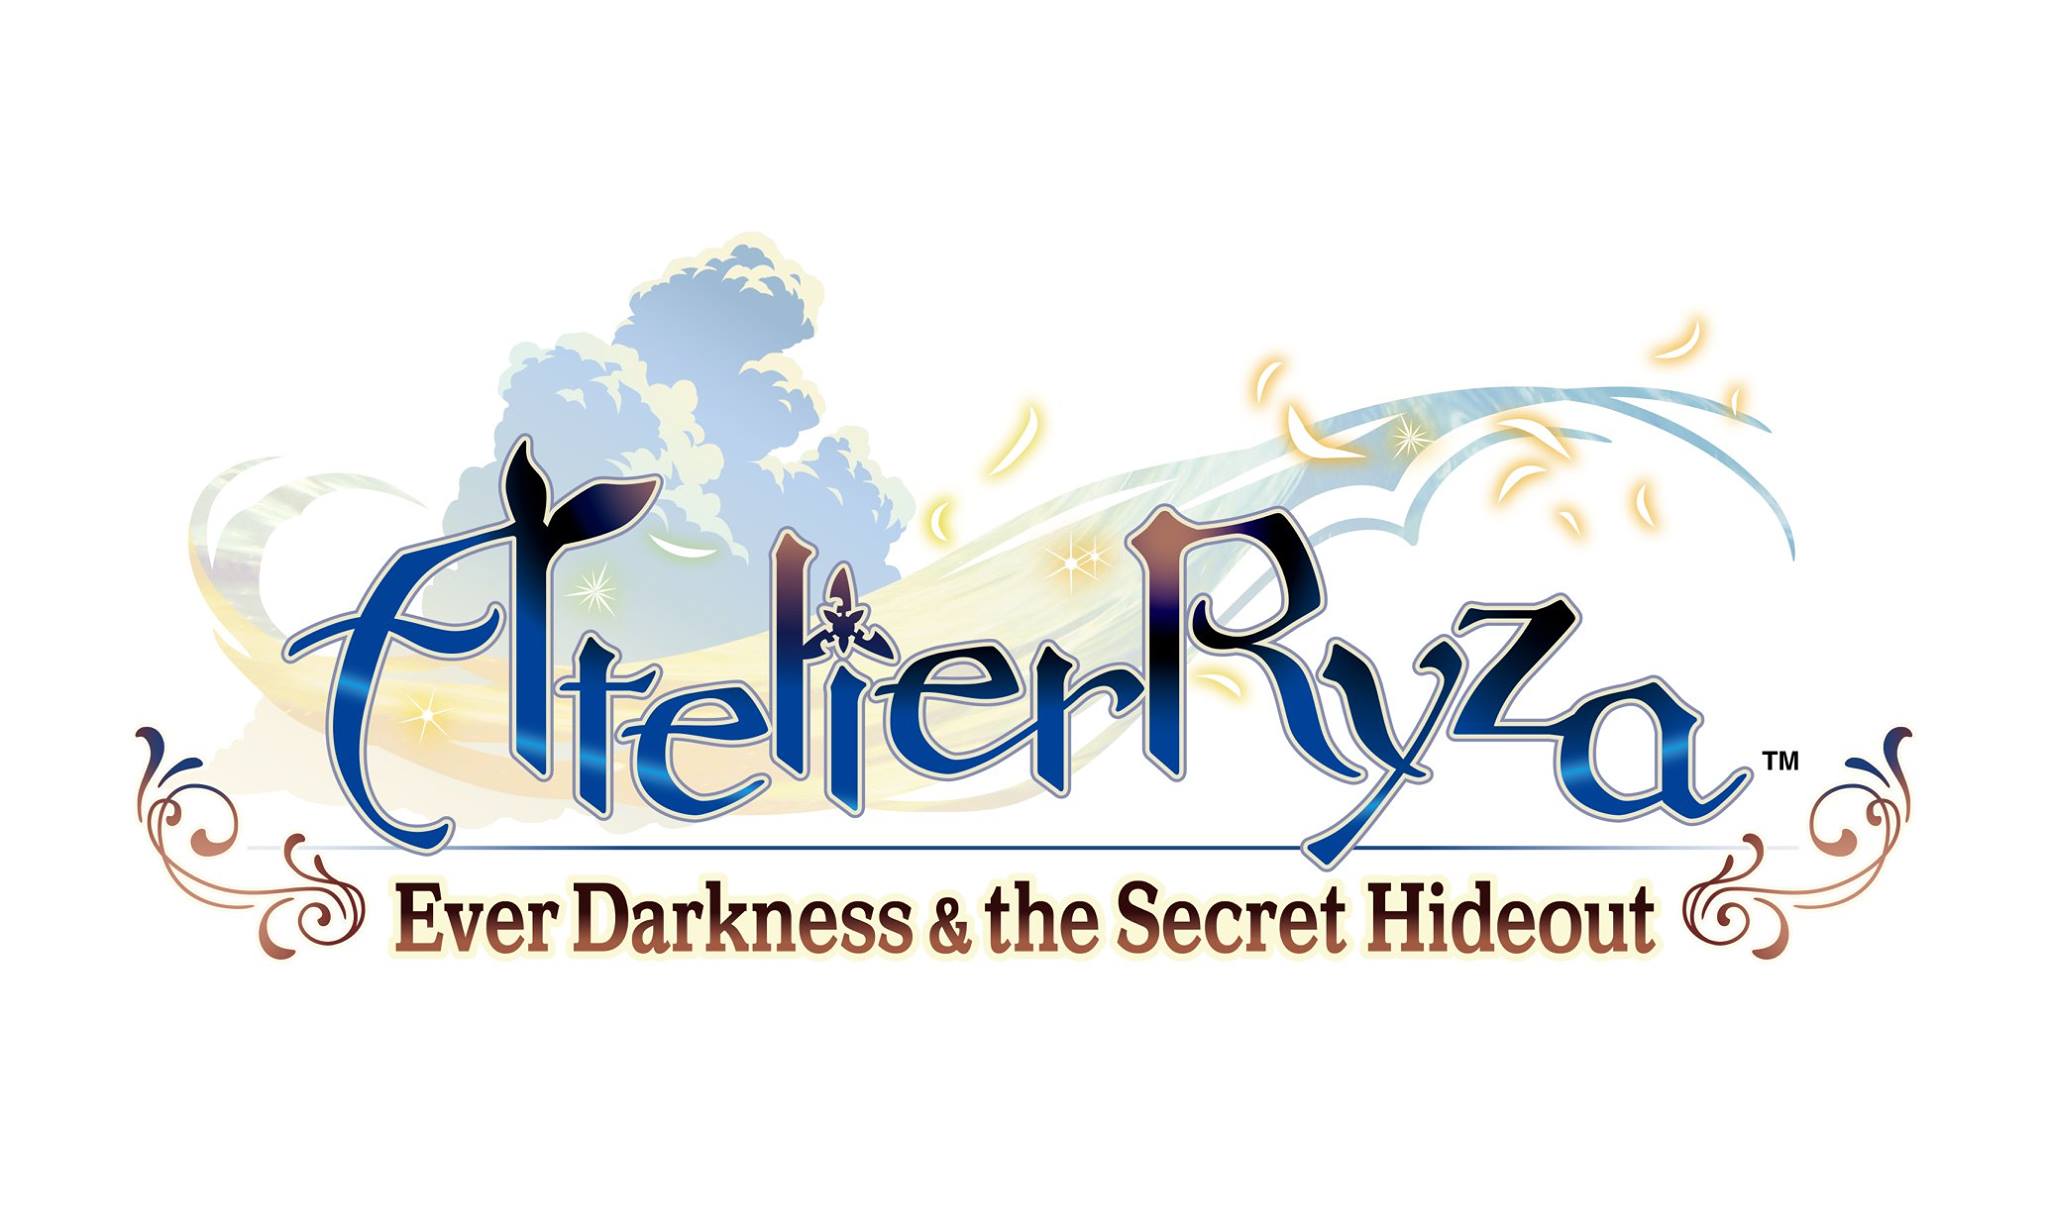 Atelier Ryza Ever Darkness